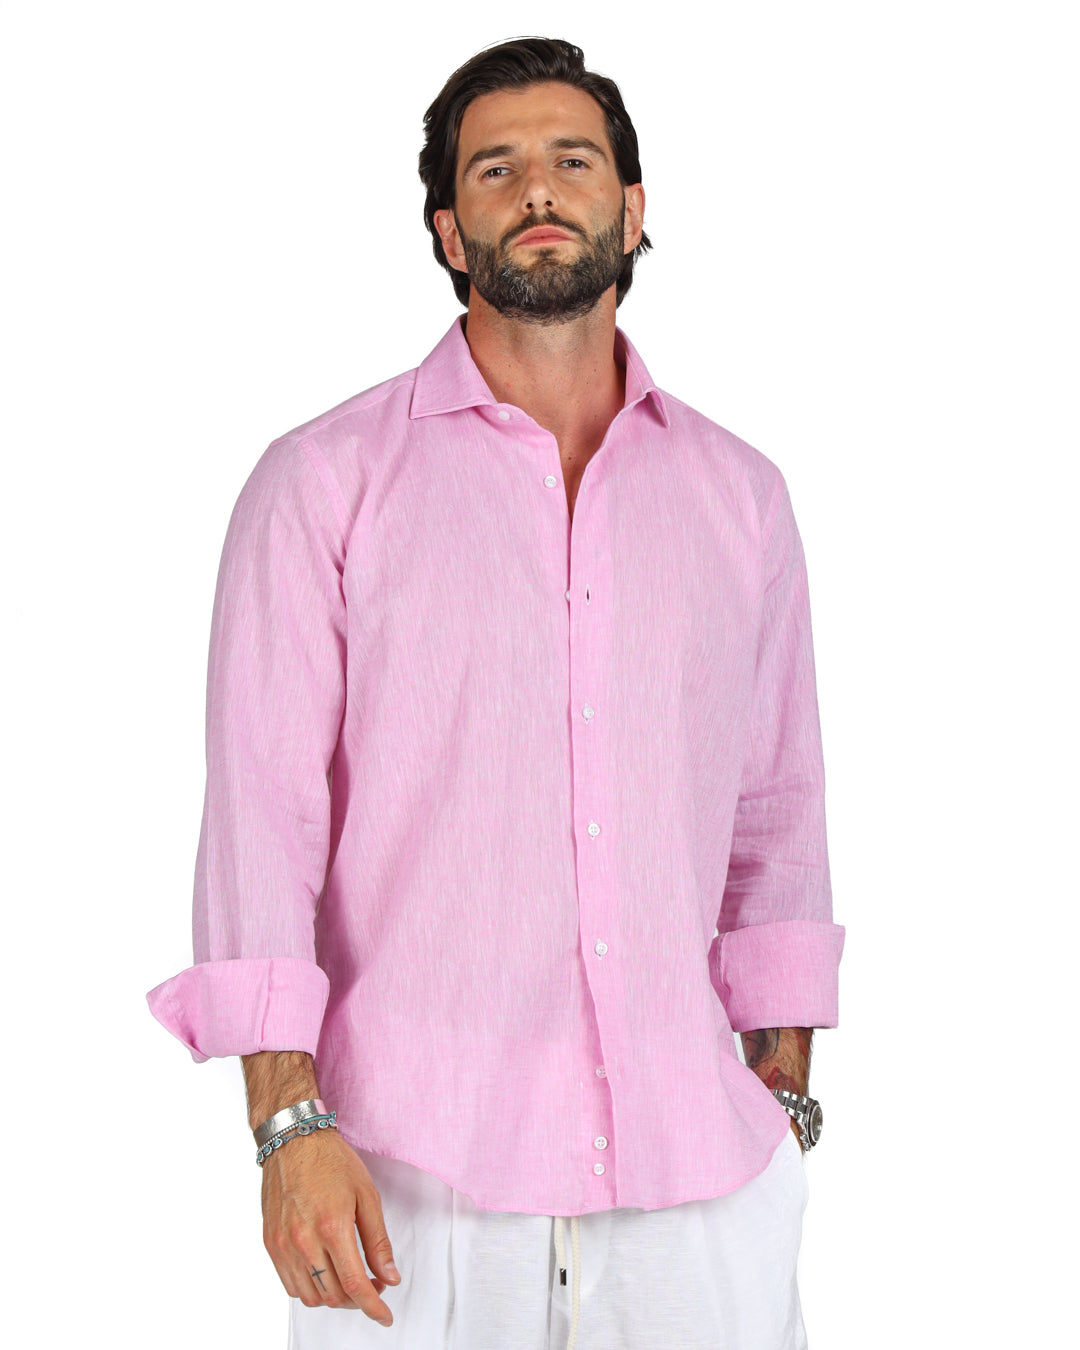 Praiano - Camicia classica rosa in lino